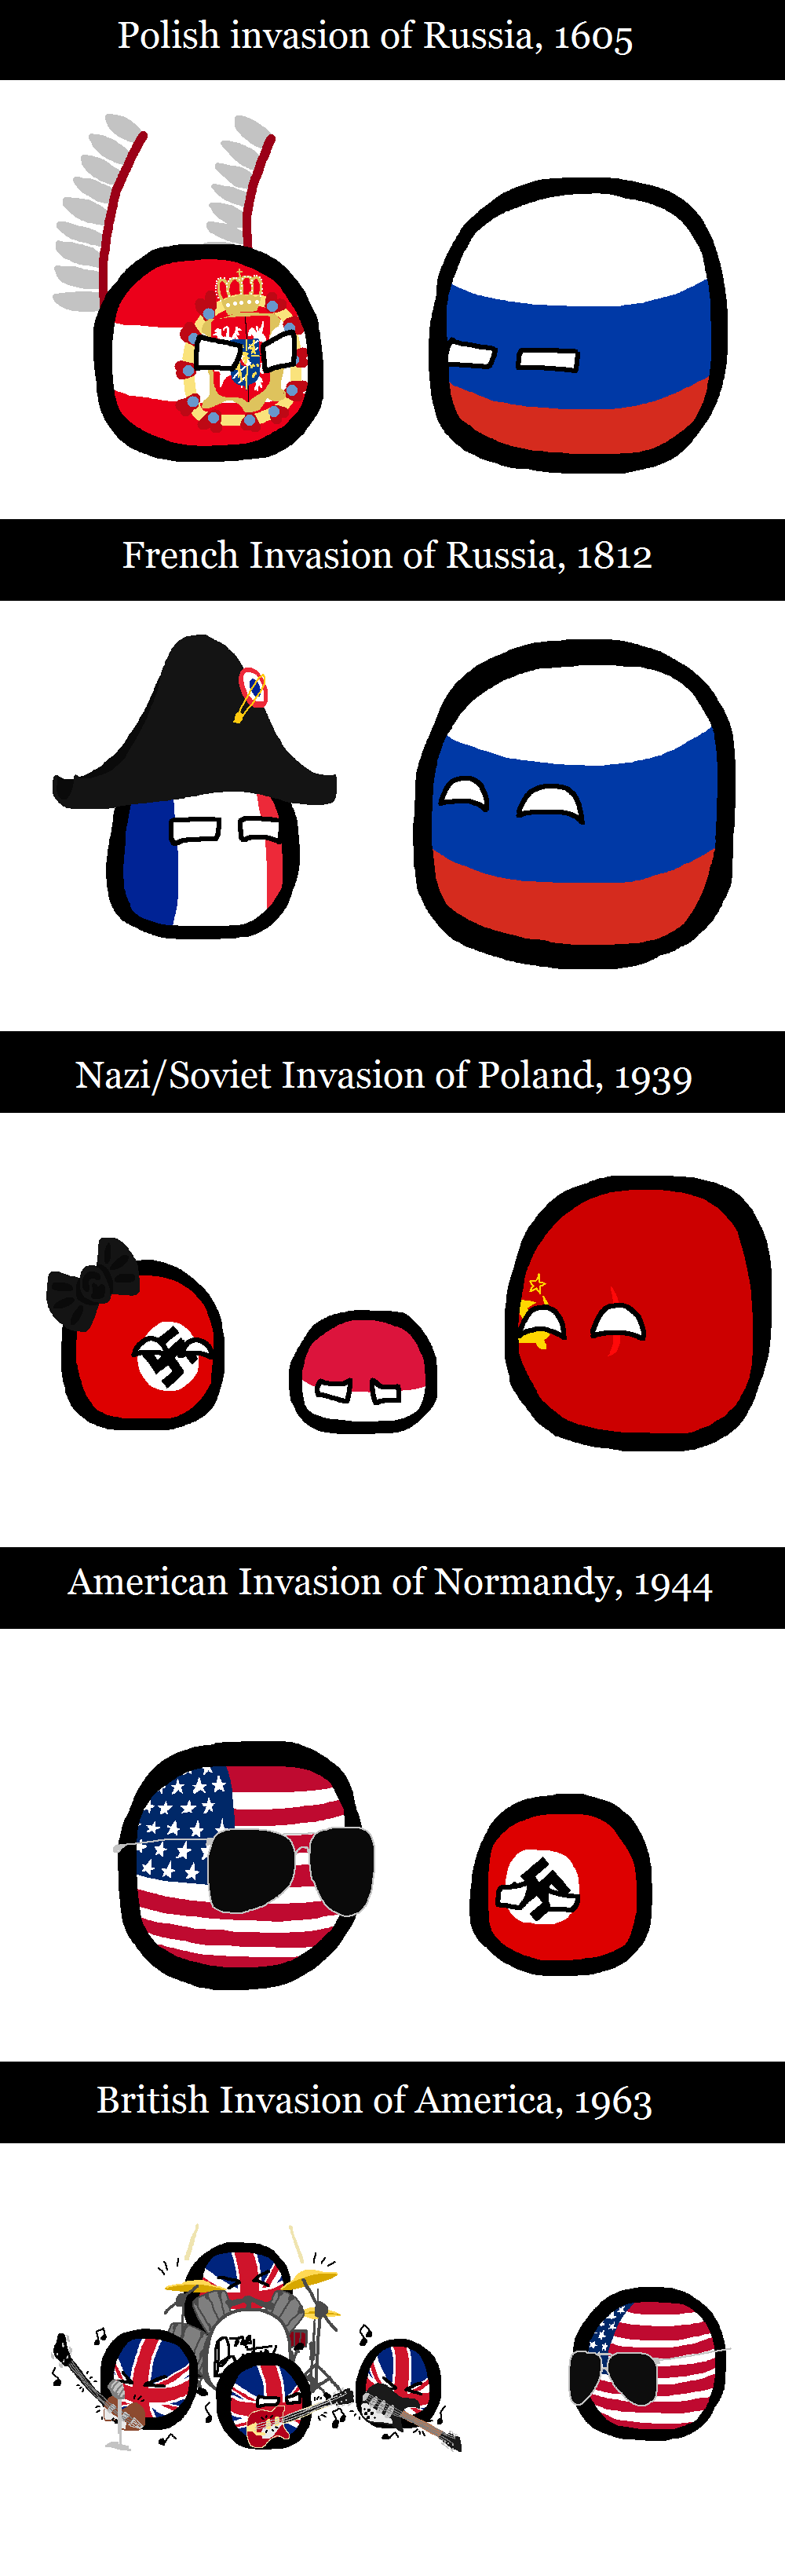 "Invasion"